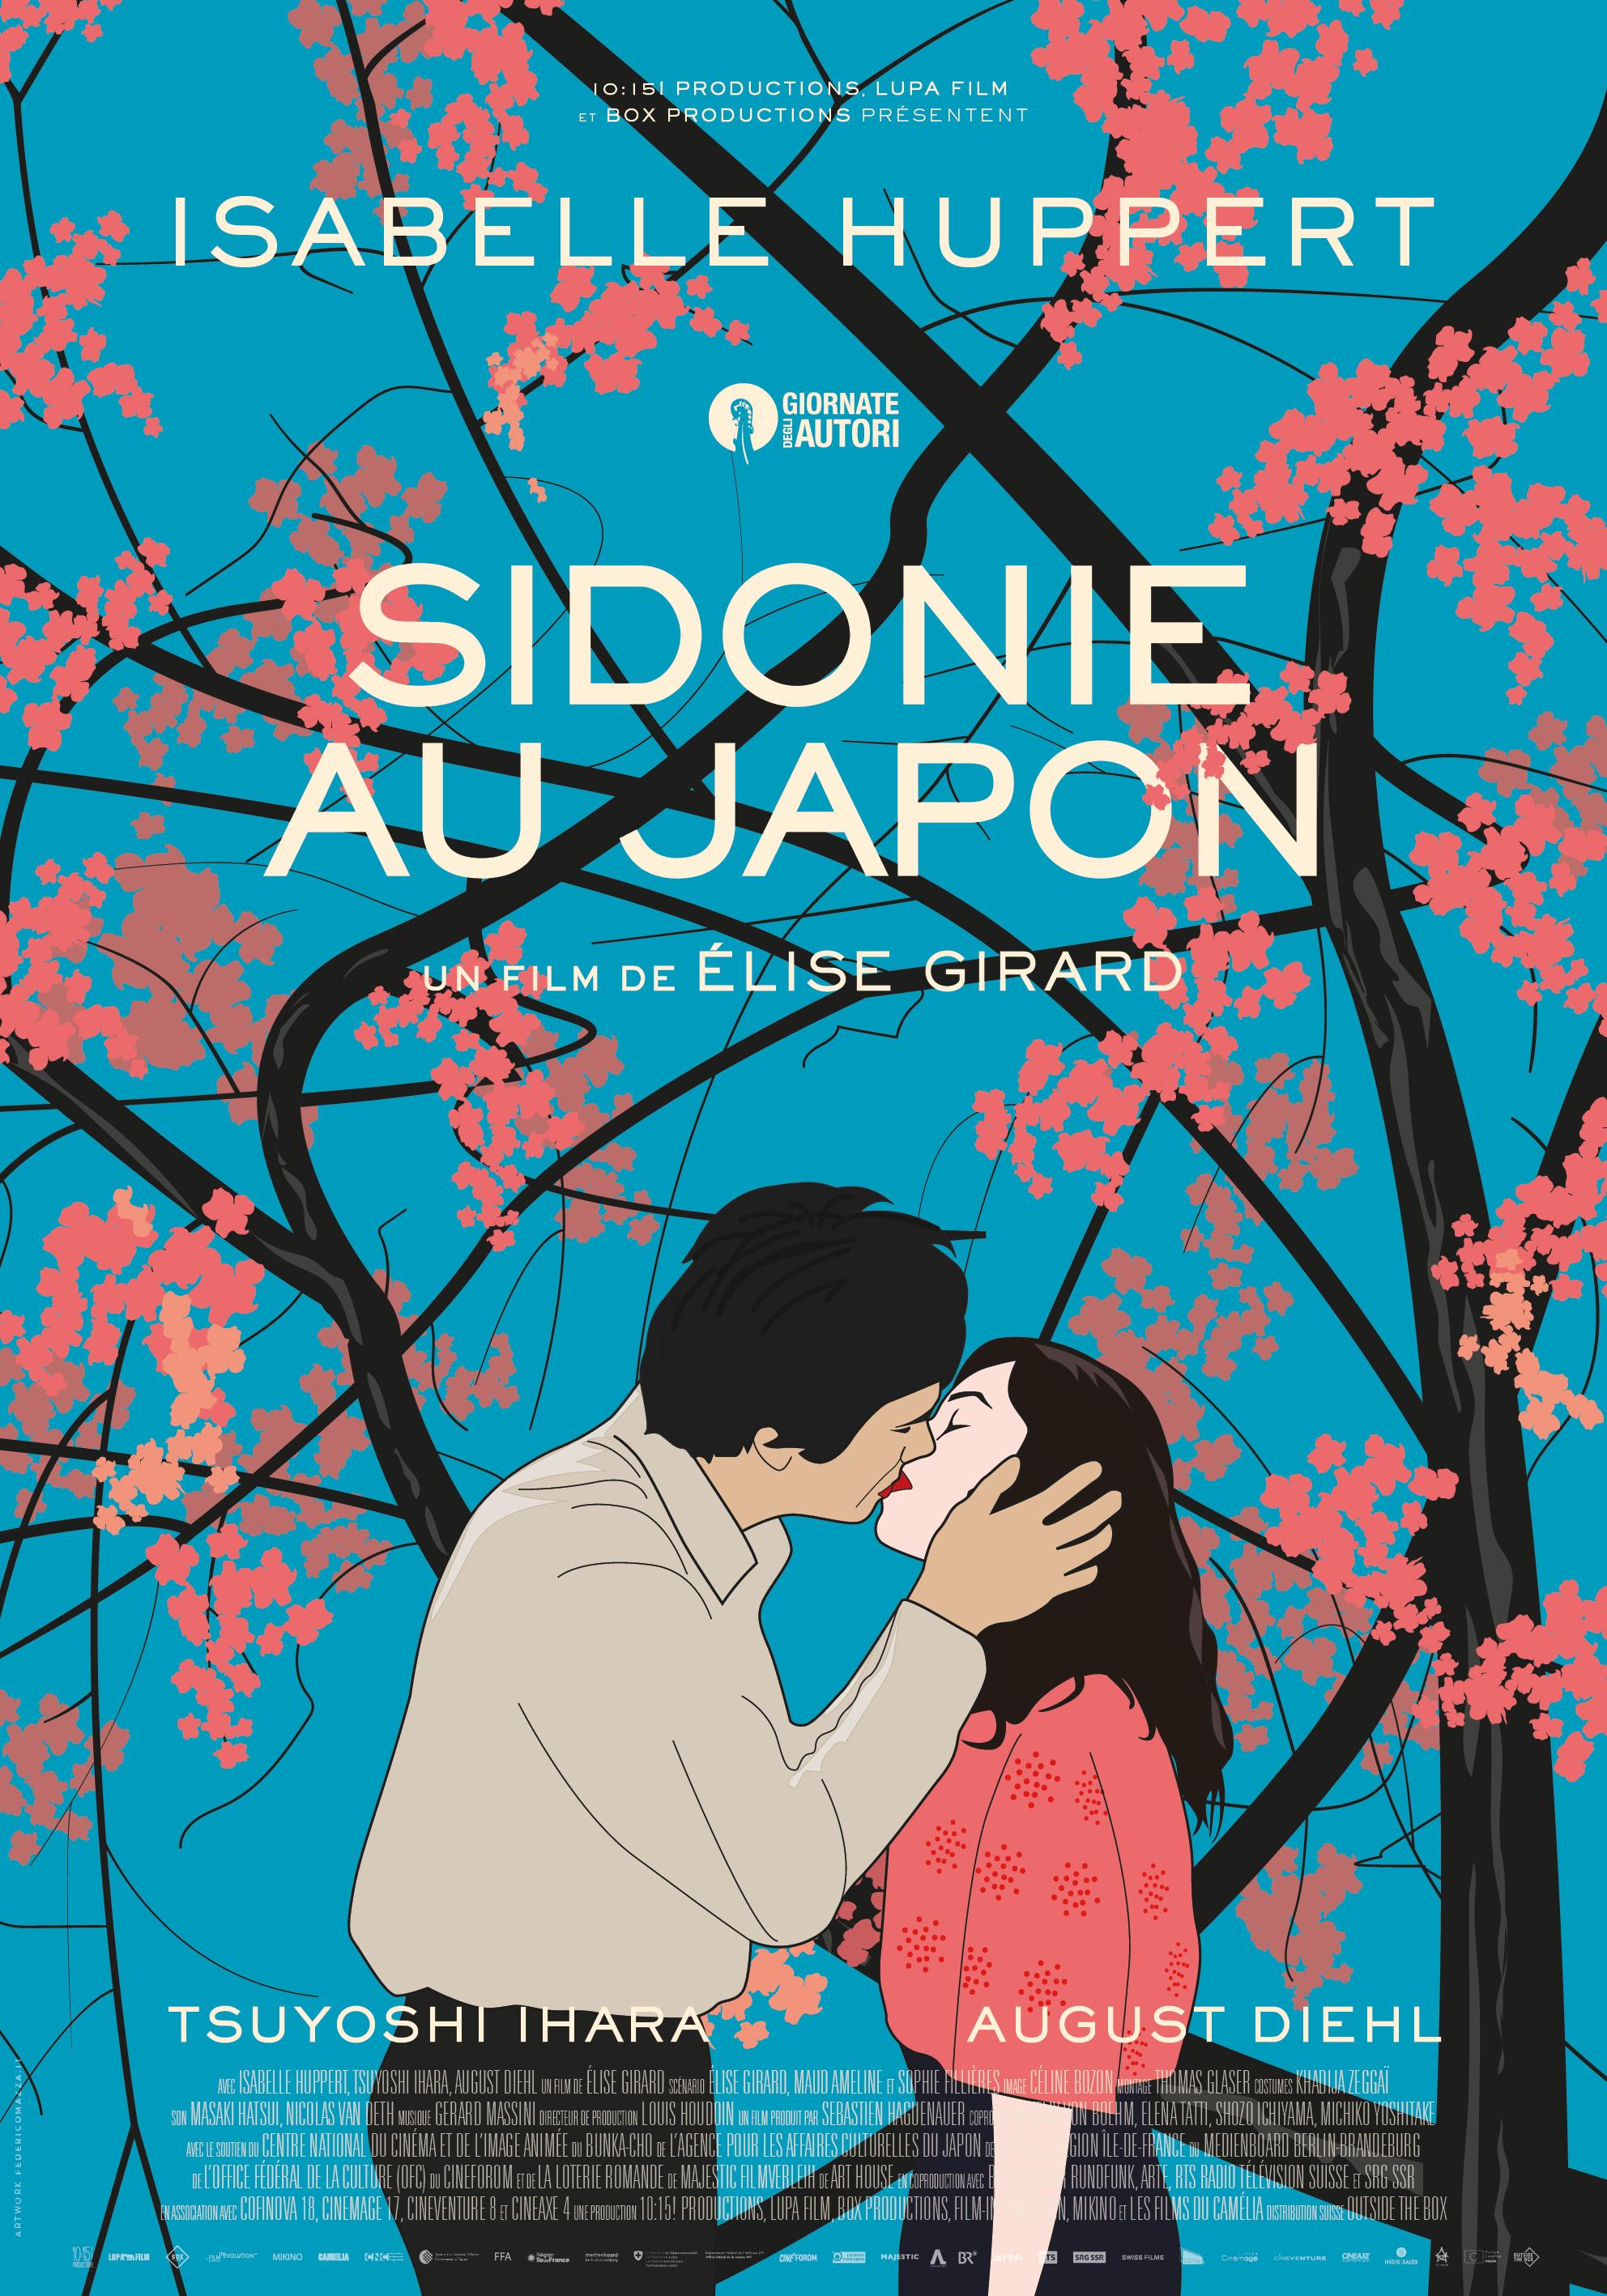 L'affiche de "Sidonie au Japon", un film d'Élise Girard. [RTS - 10:15! Productions - Lupa Film - Box Productions]